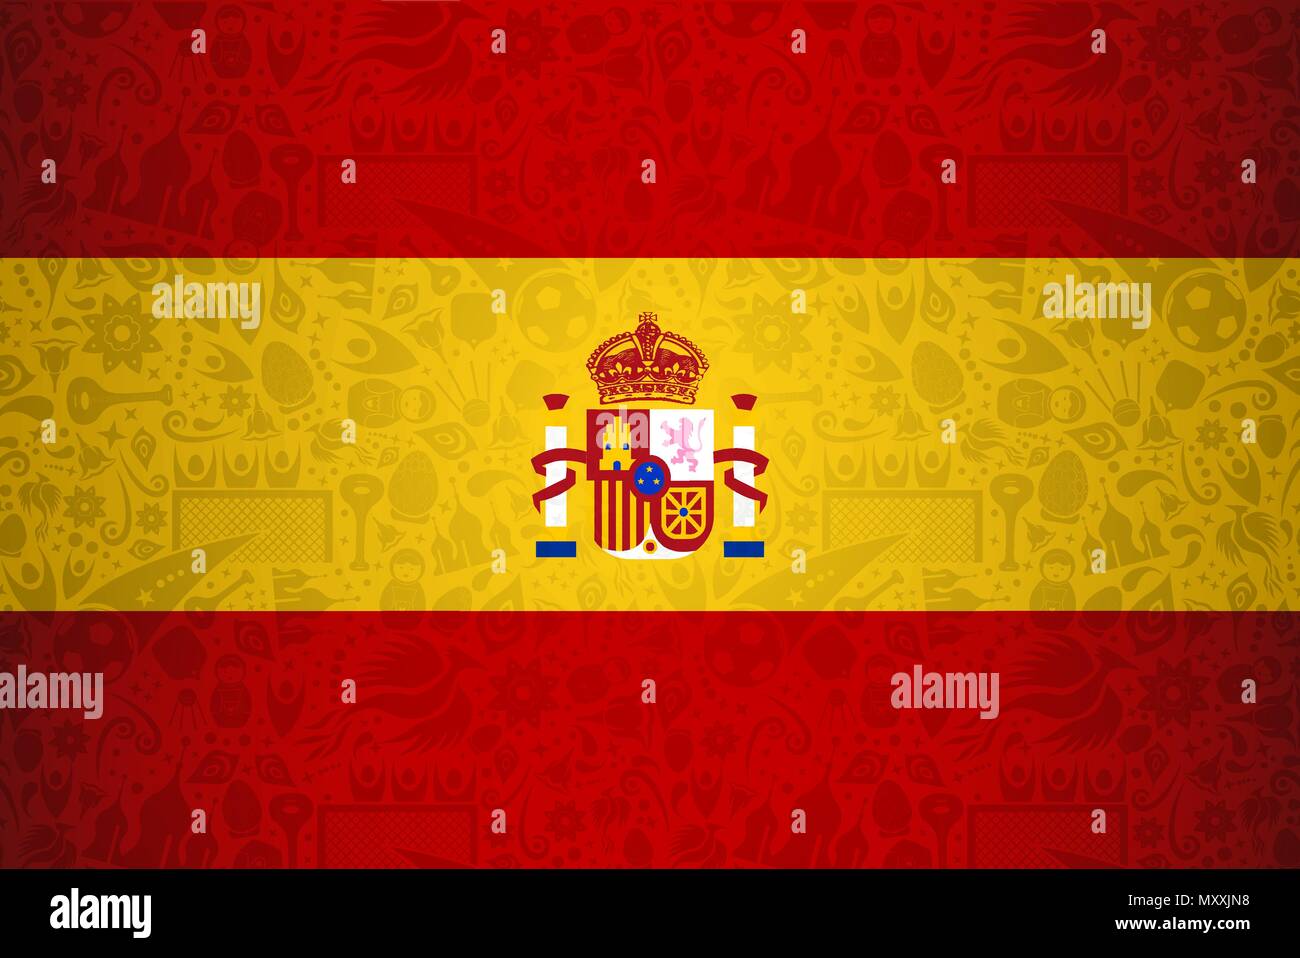 Spanien Flagge Hintergrund für besondere Fußball-Sport Ereignis. Mit russischen Stil Ikonen. EPS 10 Vektor. Stock Vektor